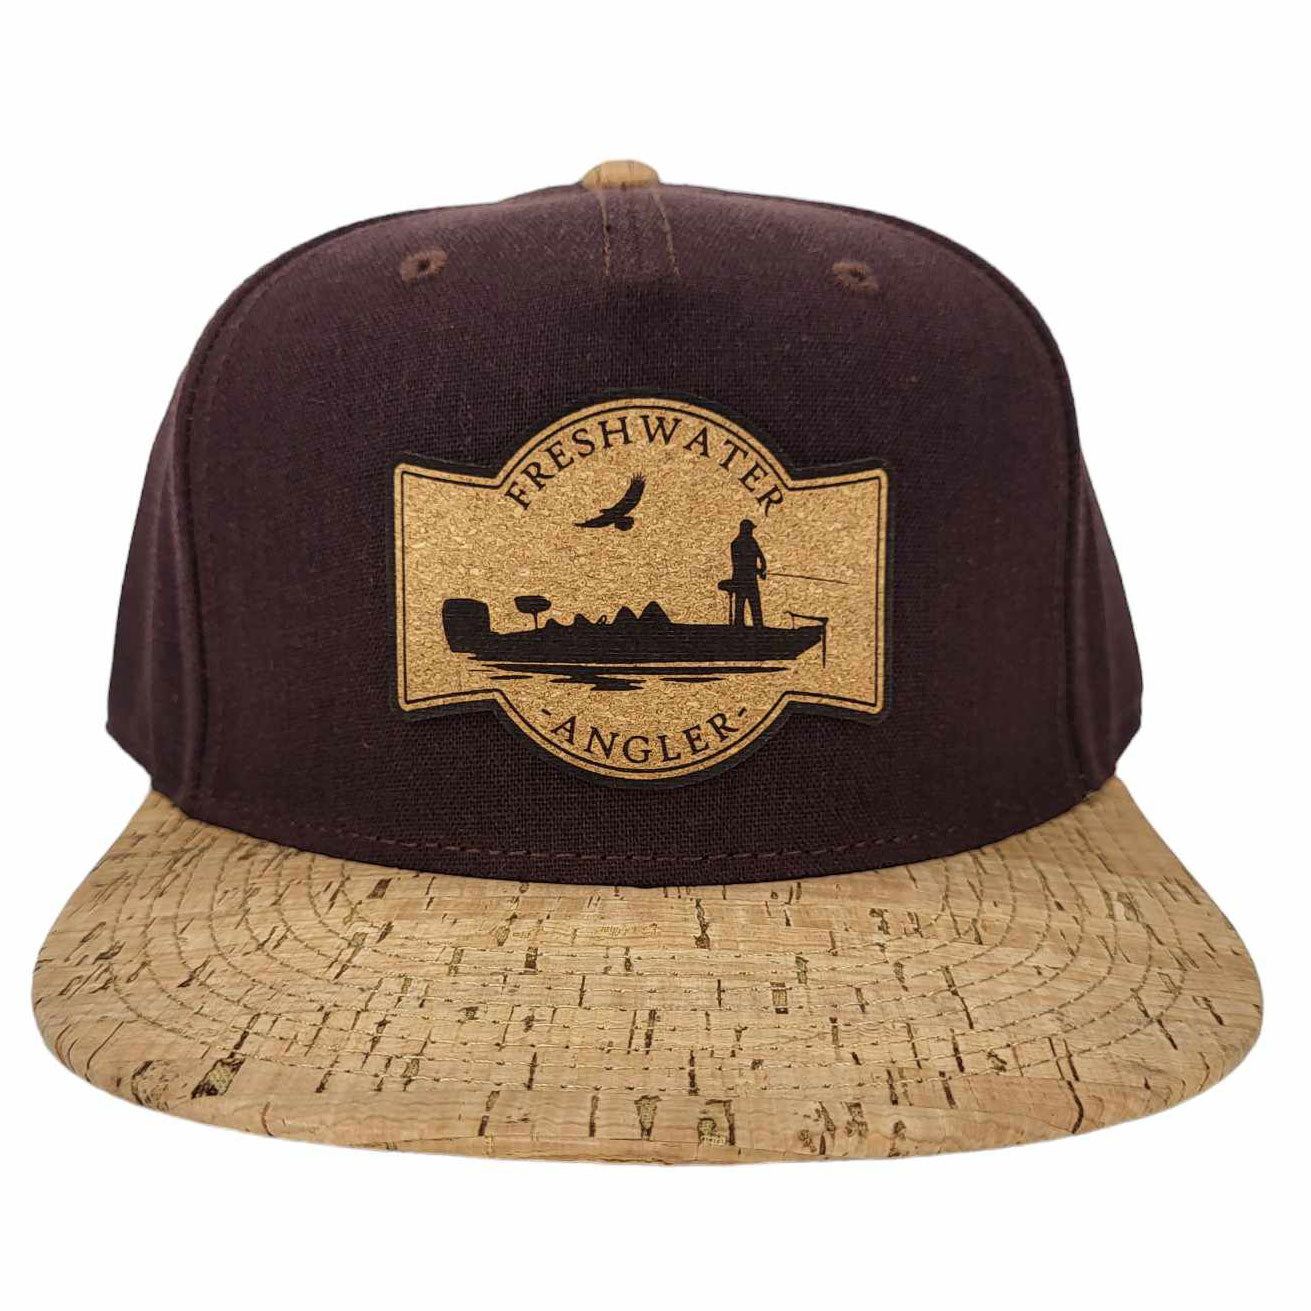 Freshwater Angler Cork Hat